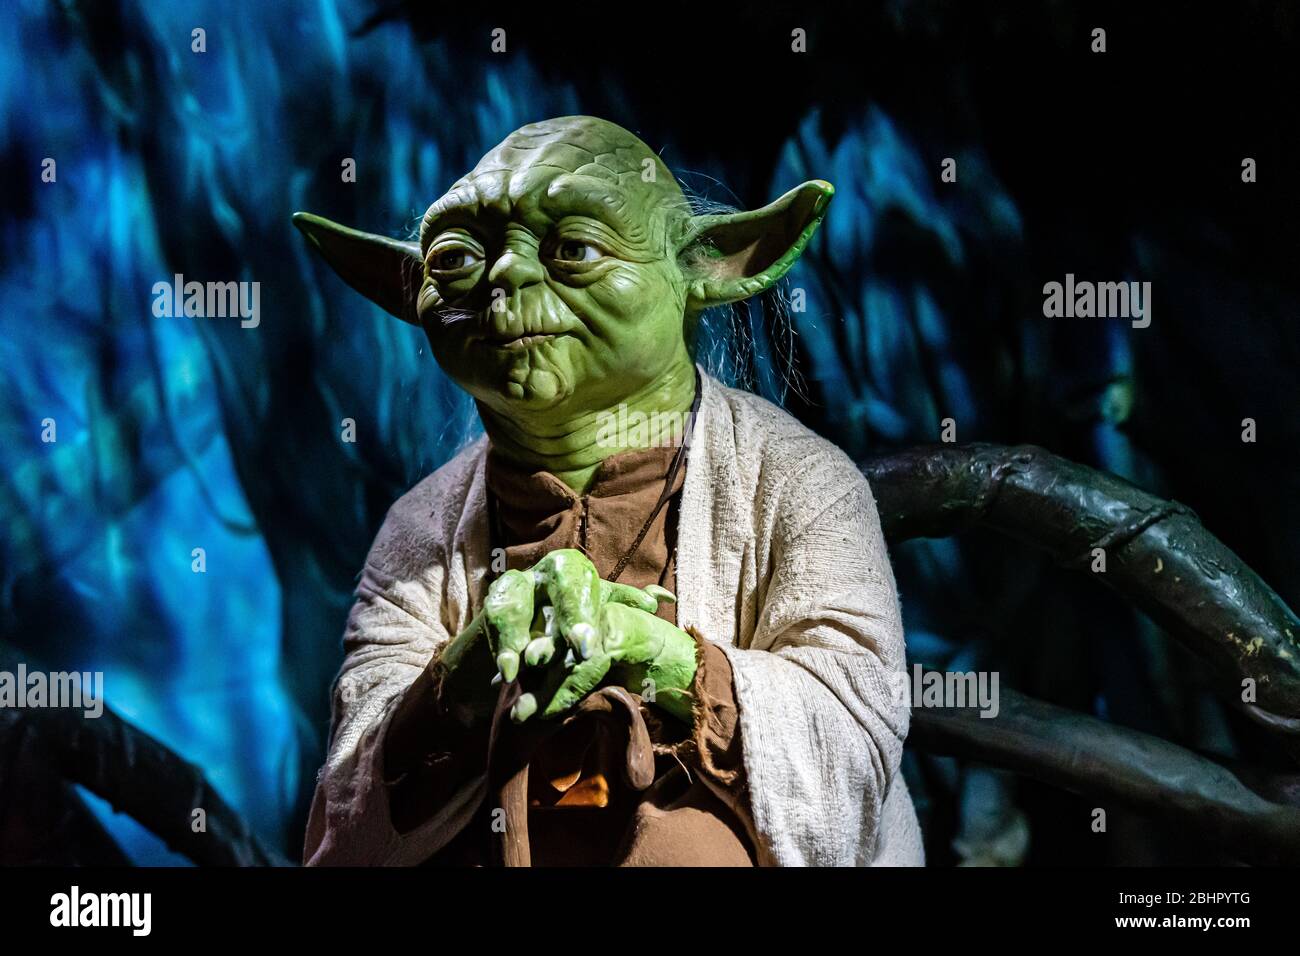 Londra, Inghilterra, Regno Unito - 2 gennaio 2020: Statue in cera del Maestro Yoda da Star Wars, il museo del cera Madame Tussauds, uno dei più popolari atten turistici Foto Stock